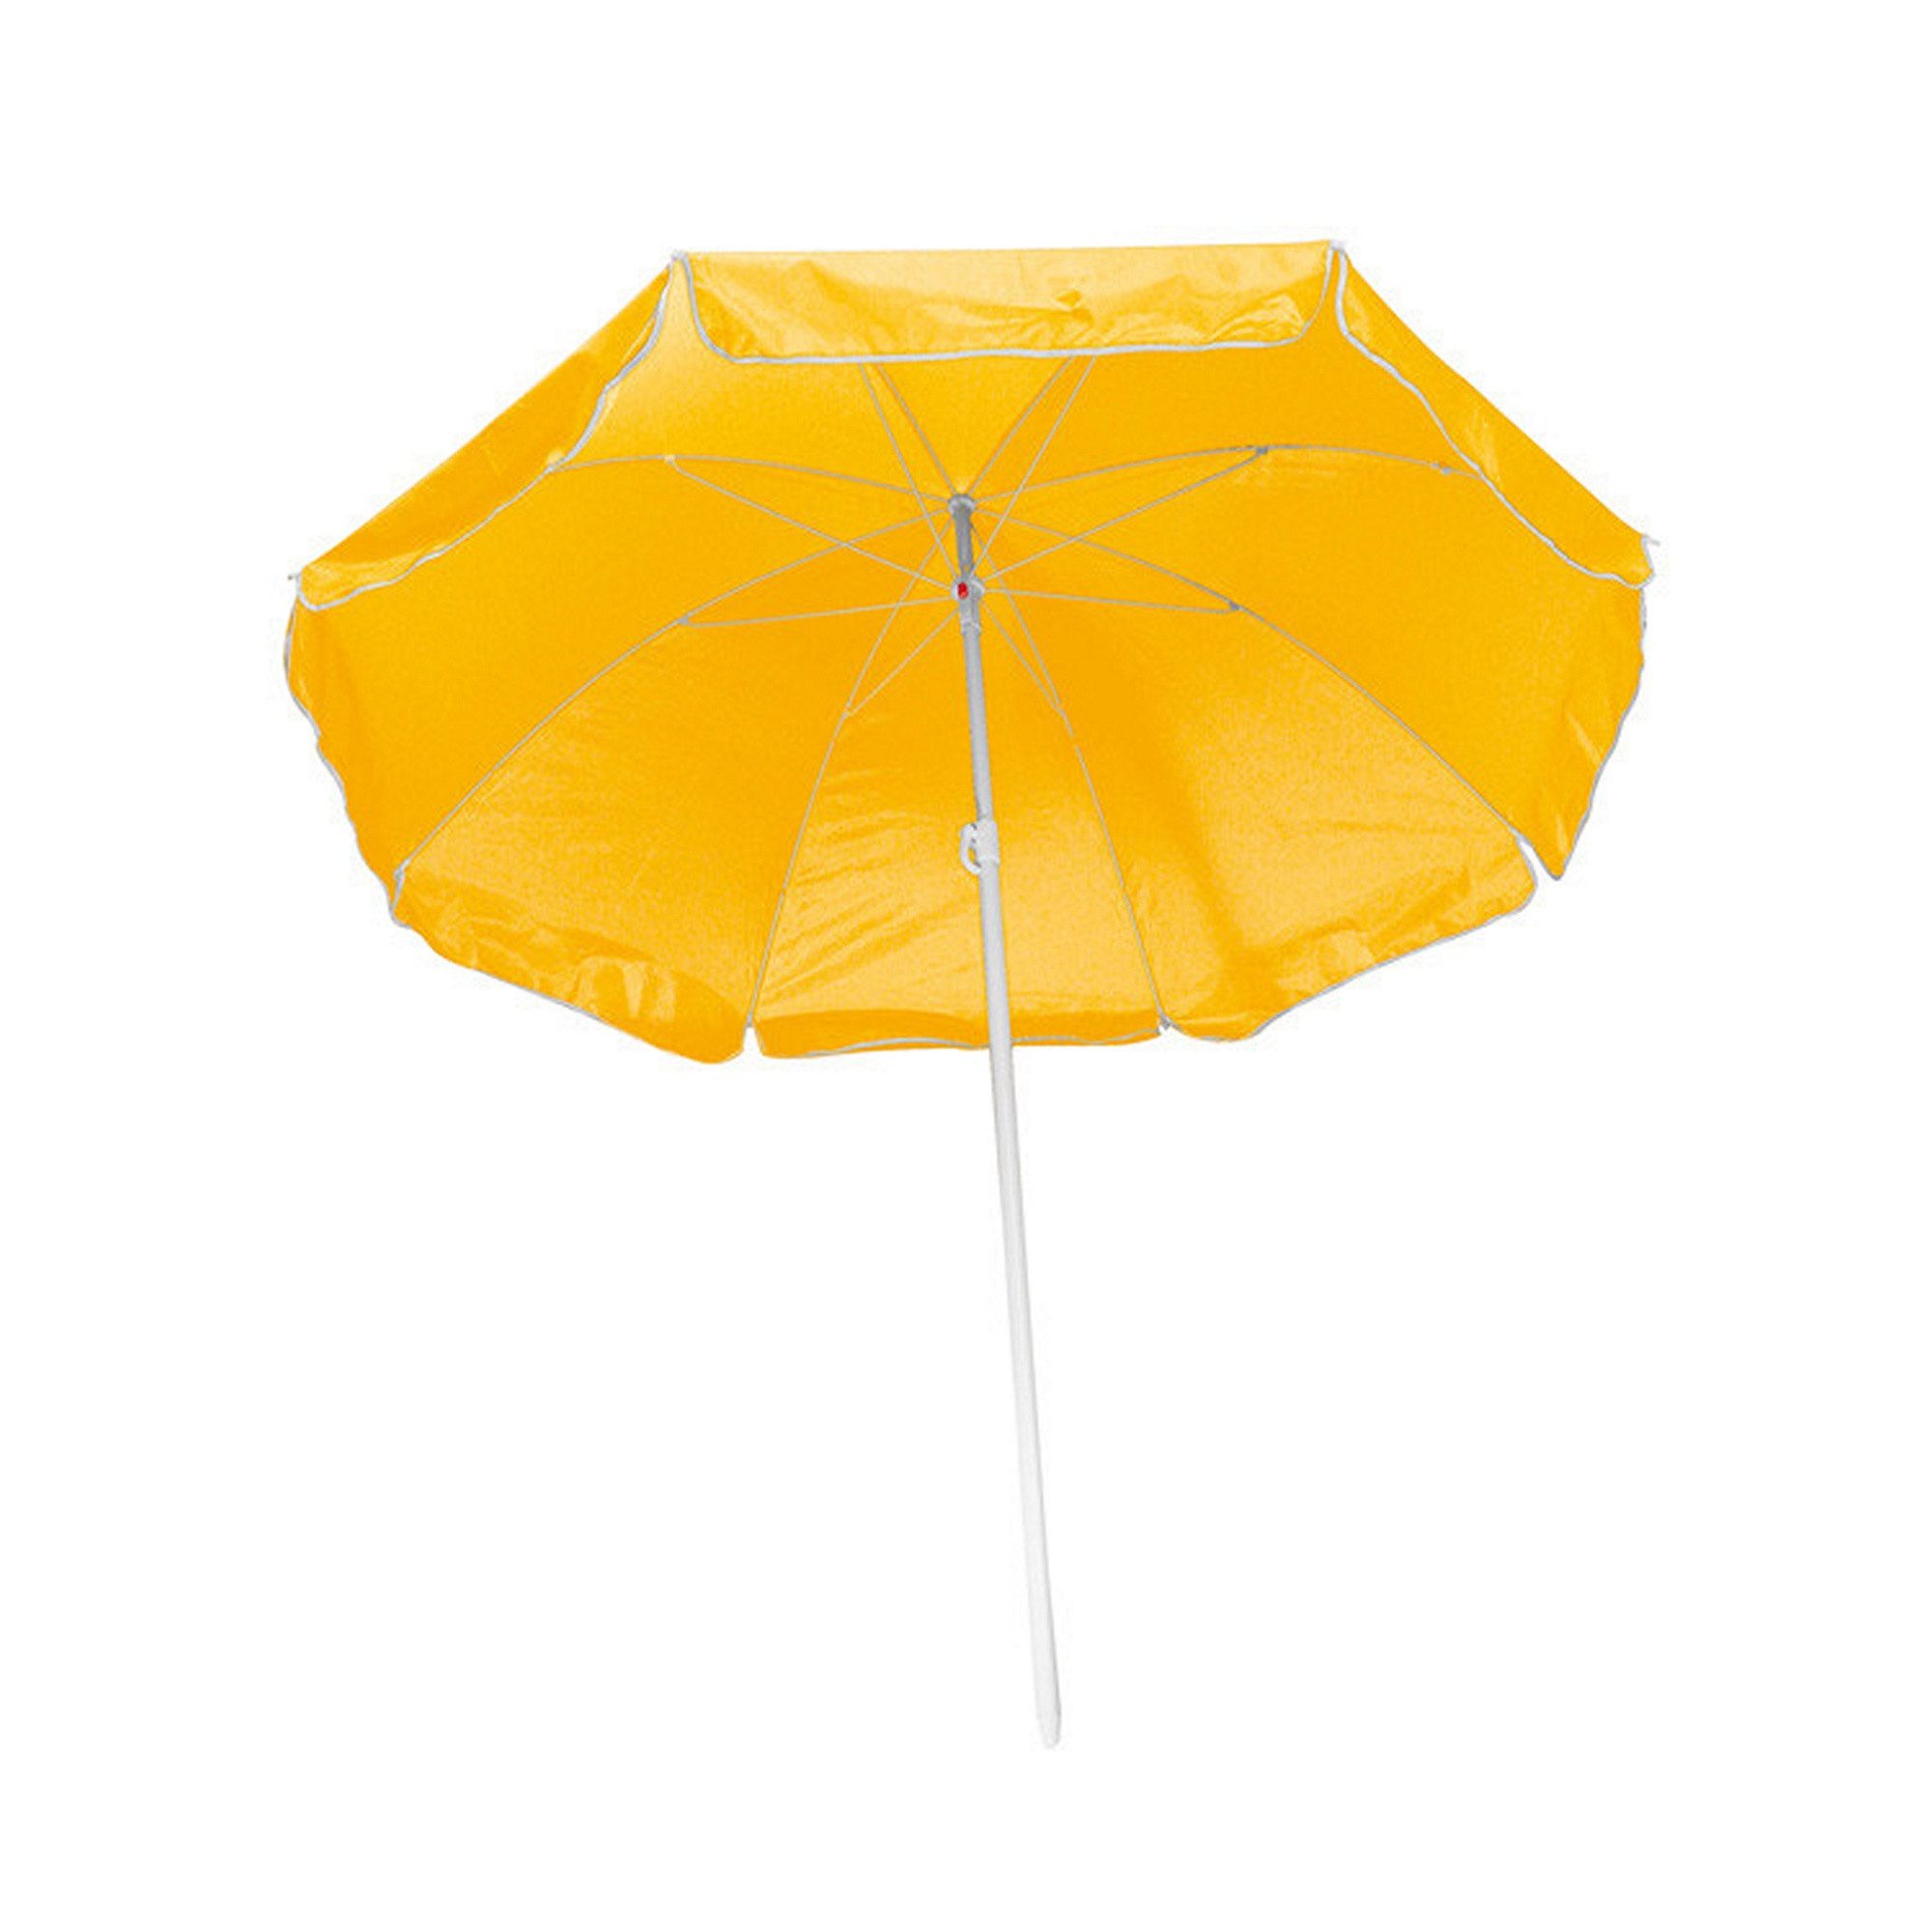 Livepac Office Sonnenschirm Strandschirm / Sonnenschirm / stufenlos verstellbar / Farbe: gelb